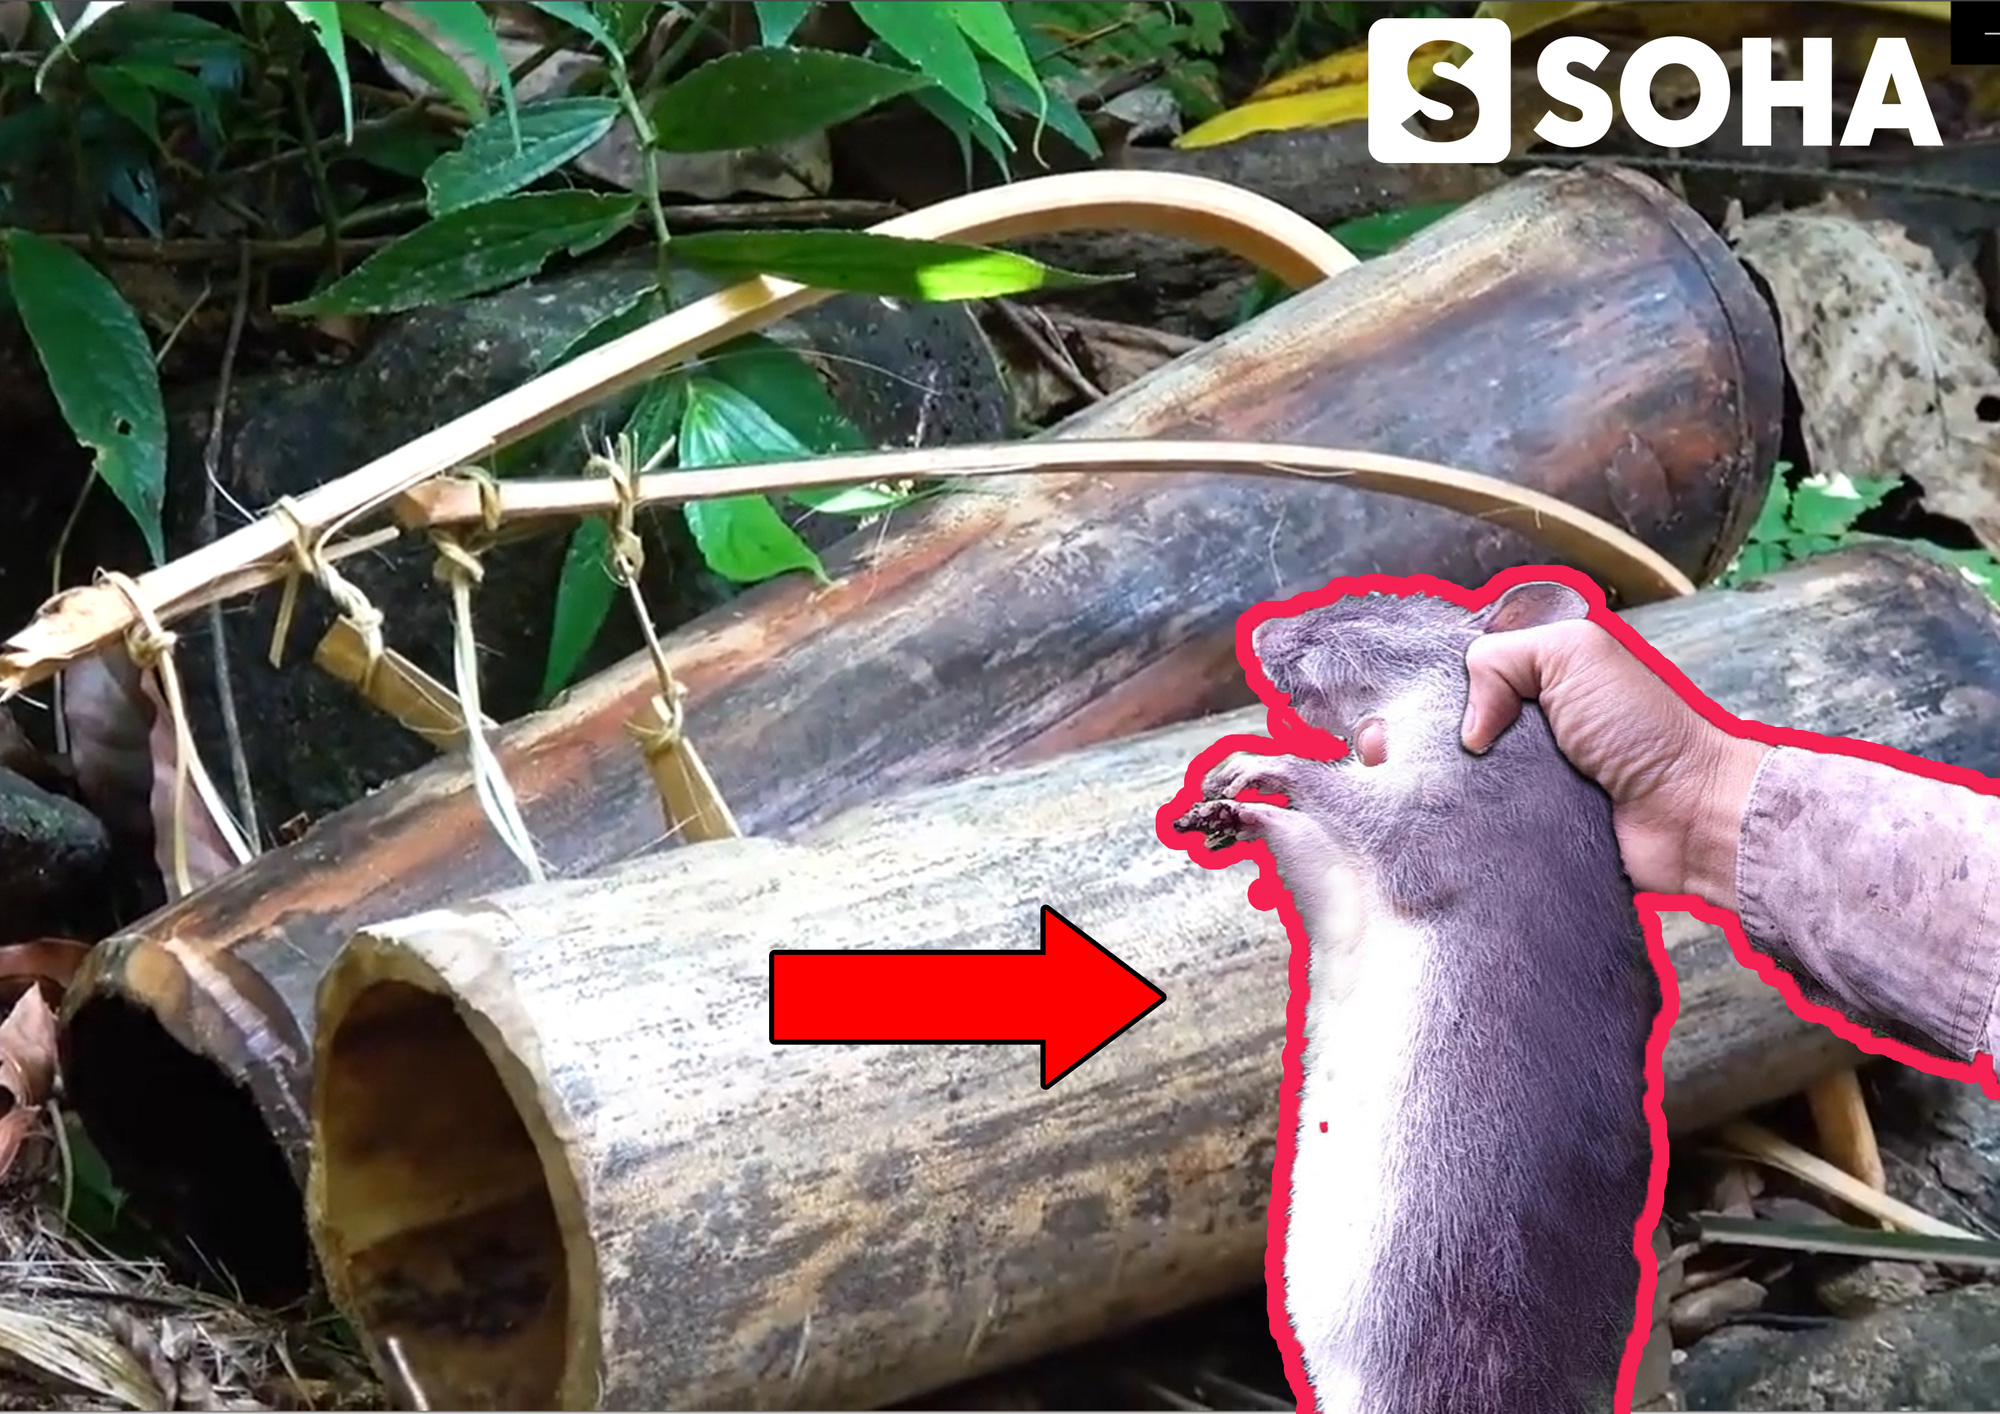 Tìm thấy quả lạ, nhóm đi rừng chế ngay chiếc bẫy từ ống tre: Bắt được chuột to như... con mèo! - Ảnh 1.